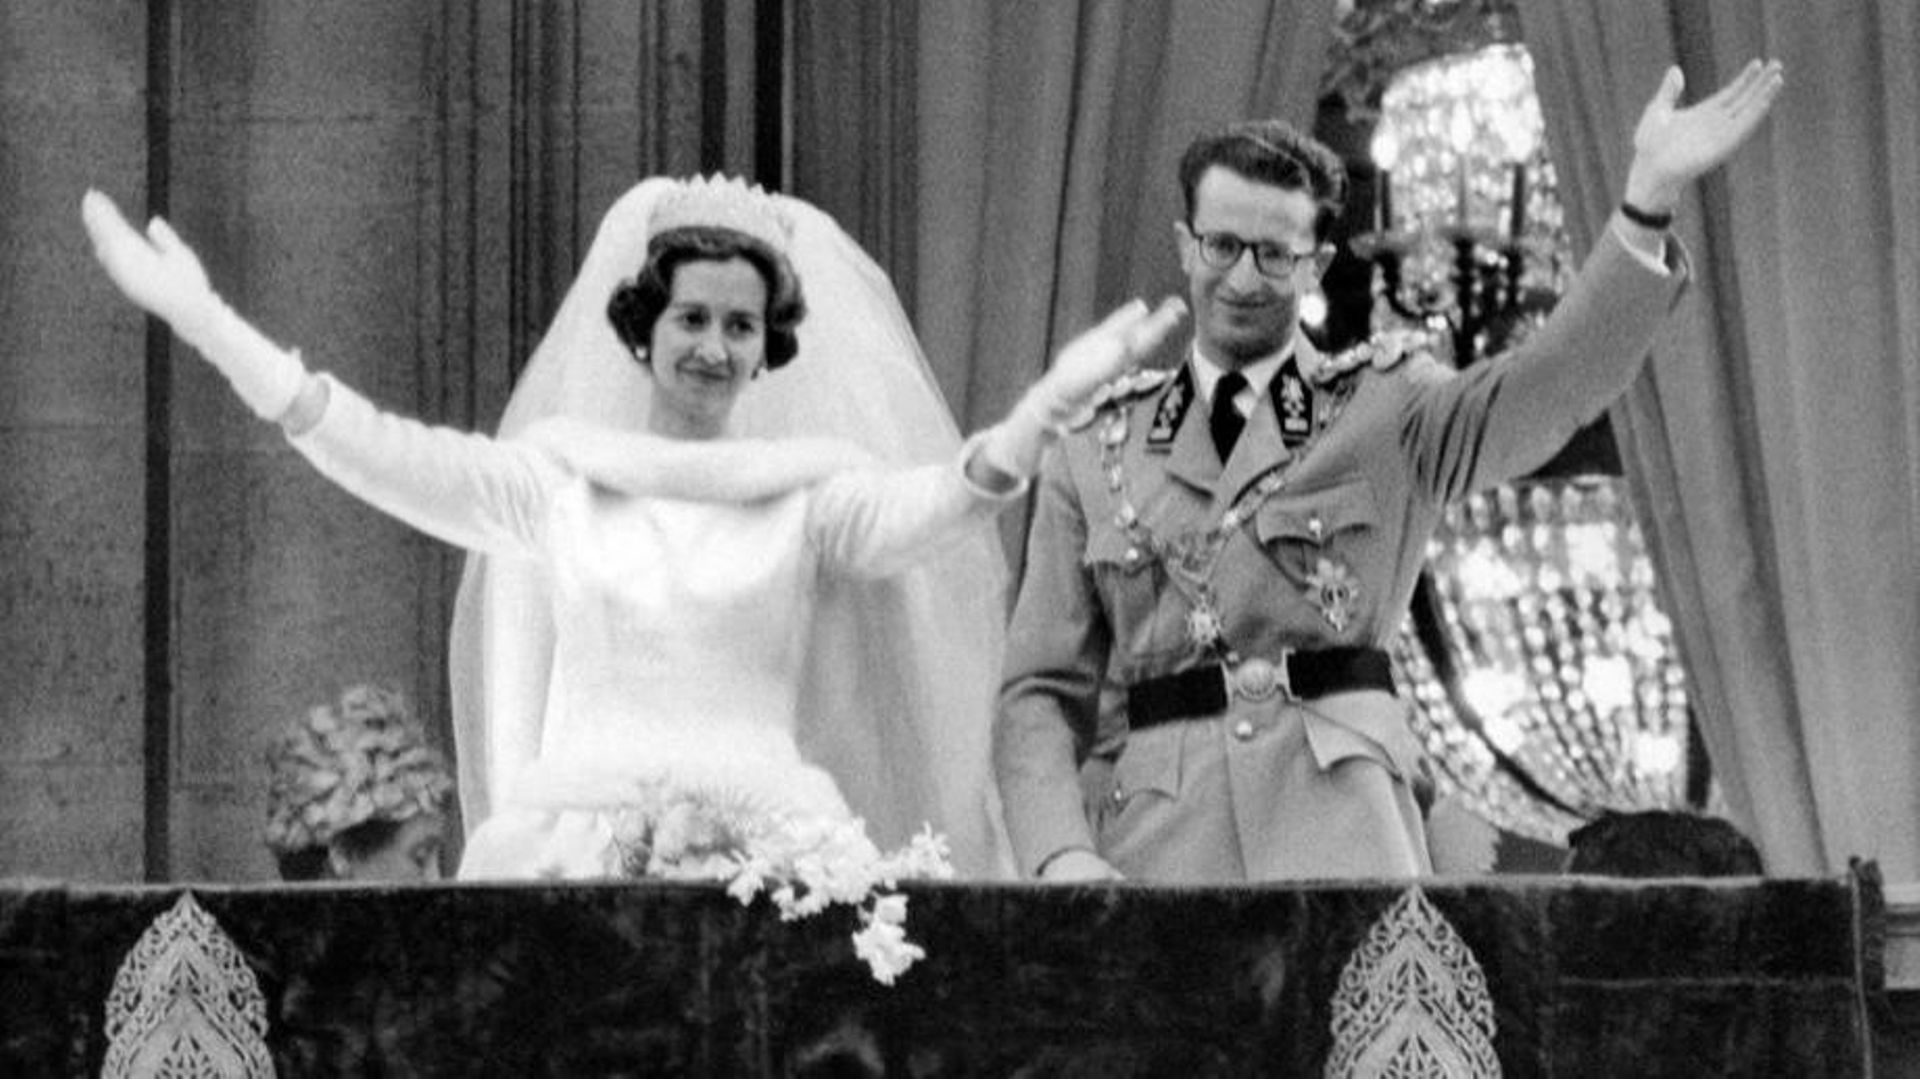 Le mariage du Roi Baudouin le 15 décembre 1960